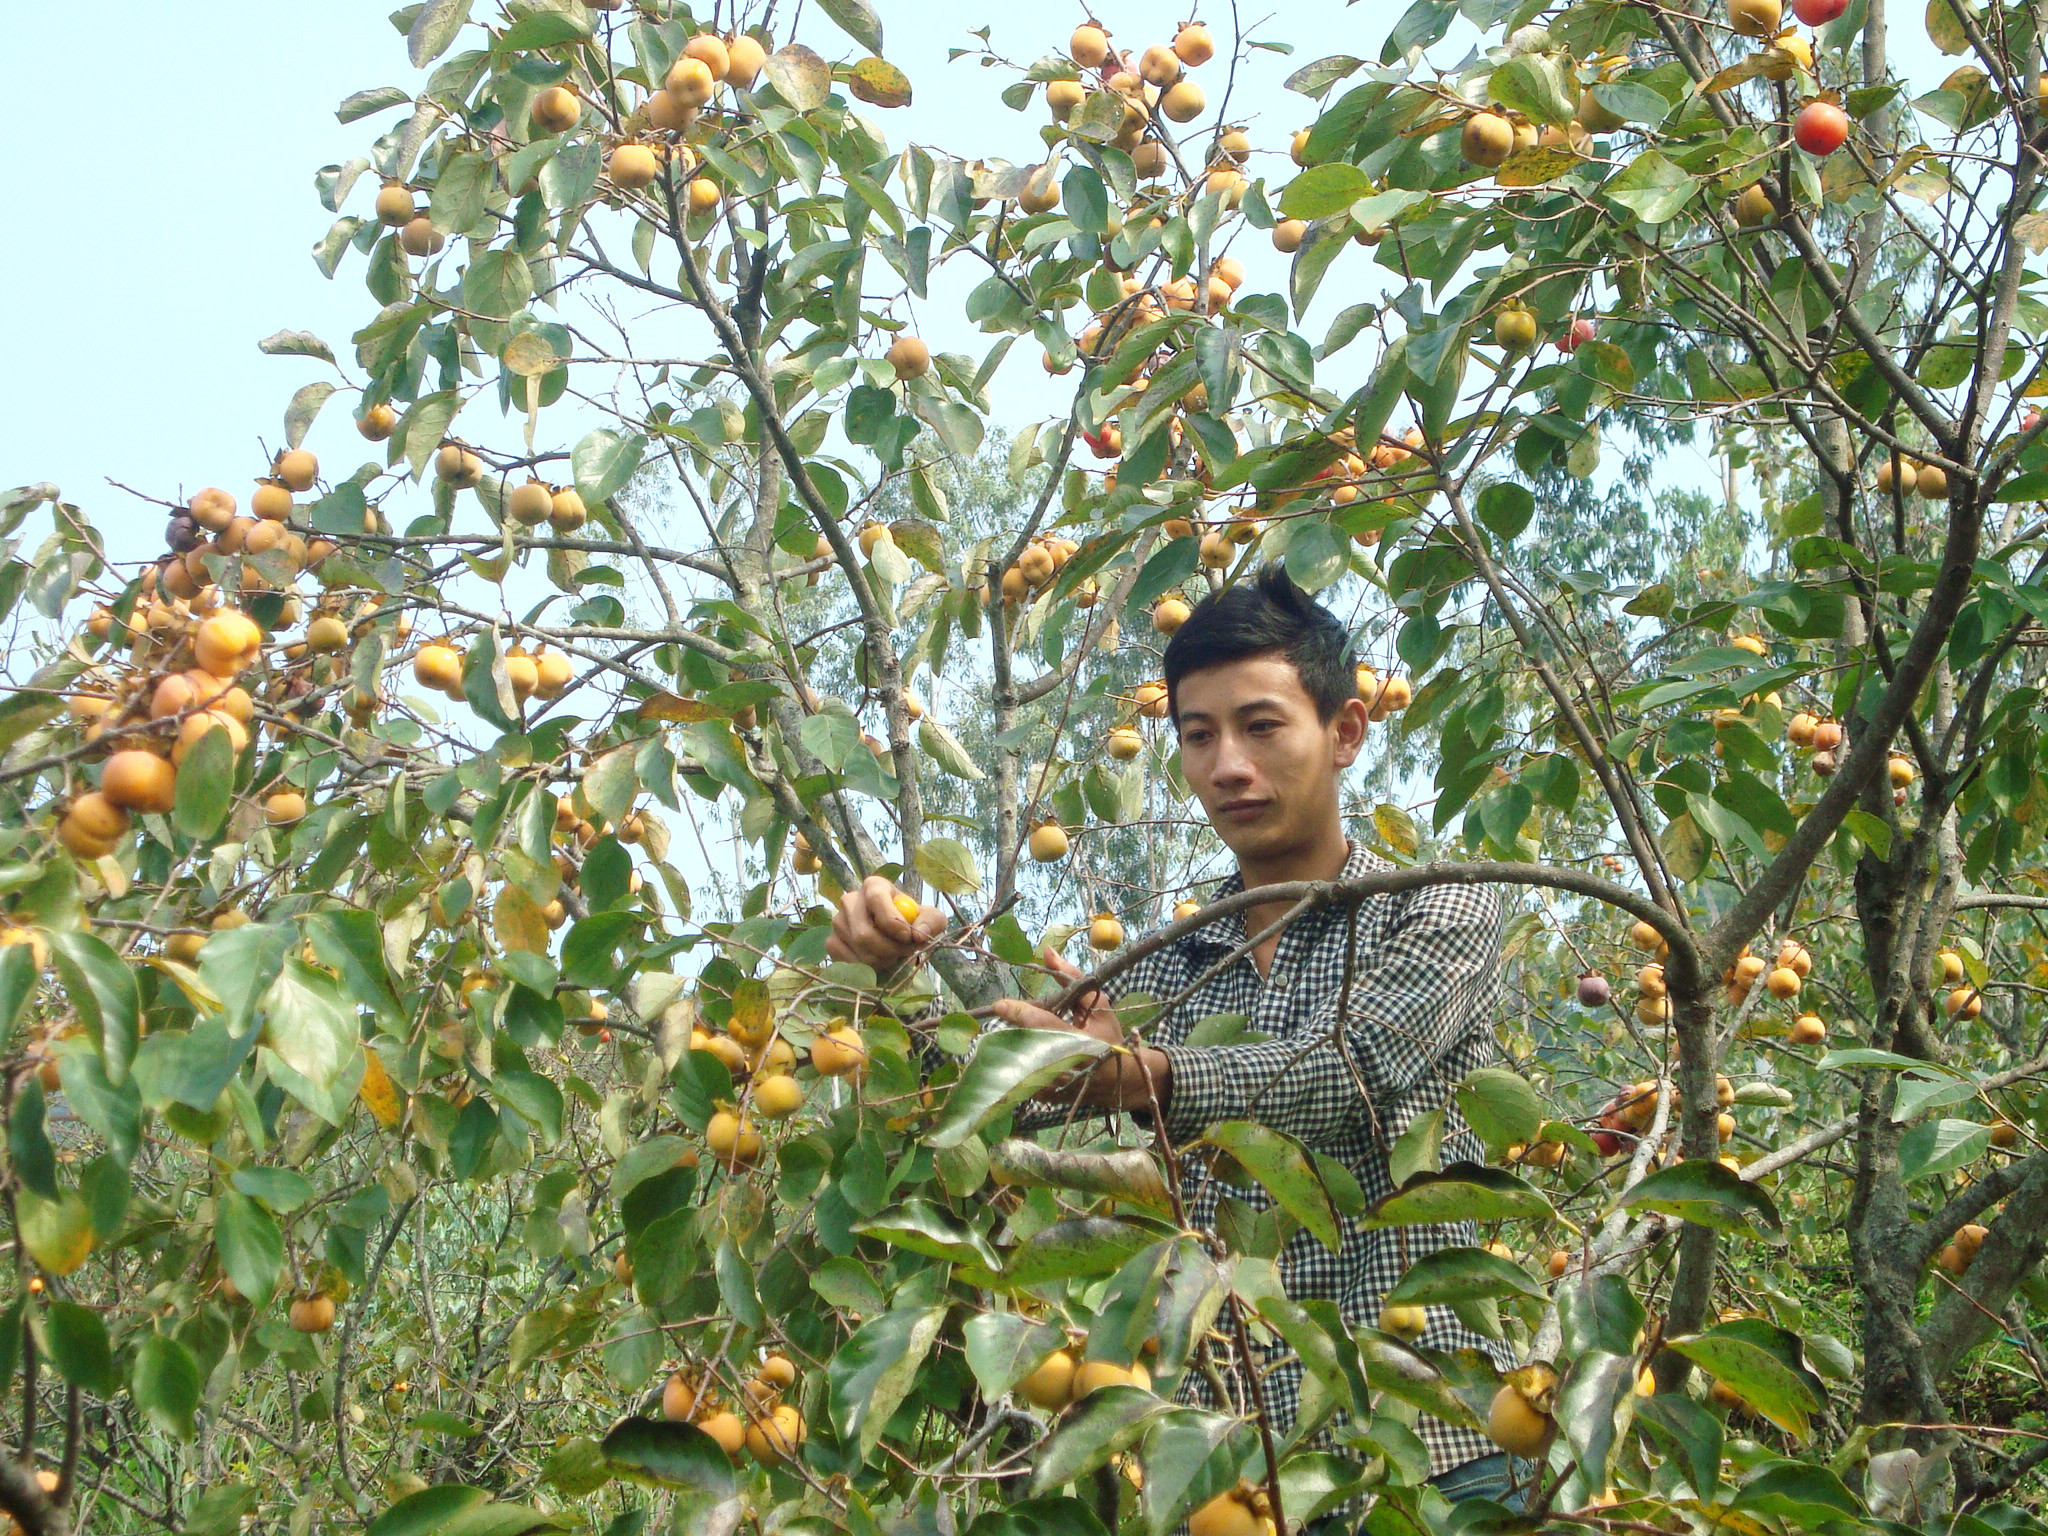 Đầu mùa, hái quả lựa chọn, cuối mùa thu hoạch đại trà. Bà Hồ Thị Minh ở xóm 8 cho biết: “Nhà tôi làm 0,5 ha, mỗi năm cũng thu hoạch 2 – 3 tấn hồng, bán được vài chục triệu đồng, bên cạnh đó còn có thu nhập từ các loại rau quả, gia vị trồng xen nữa”.